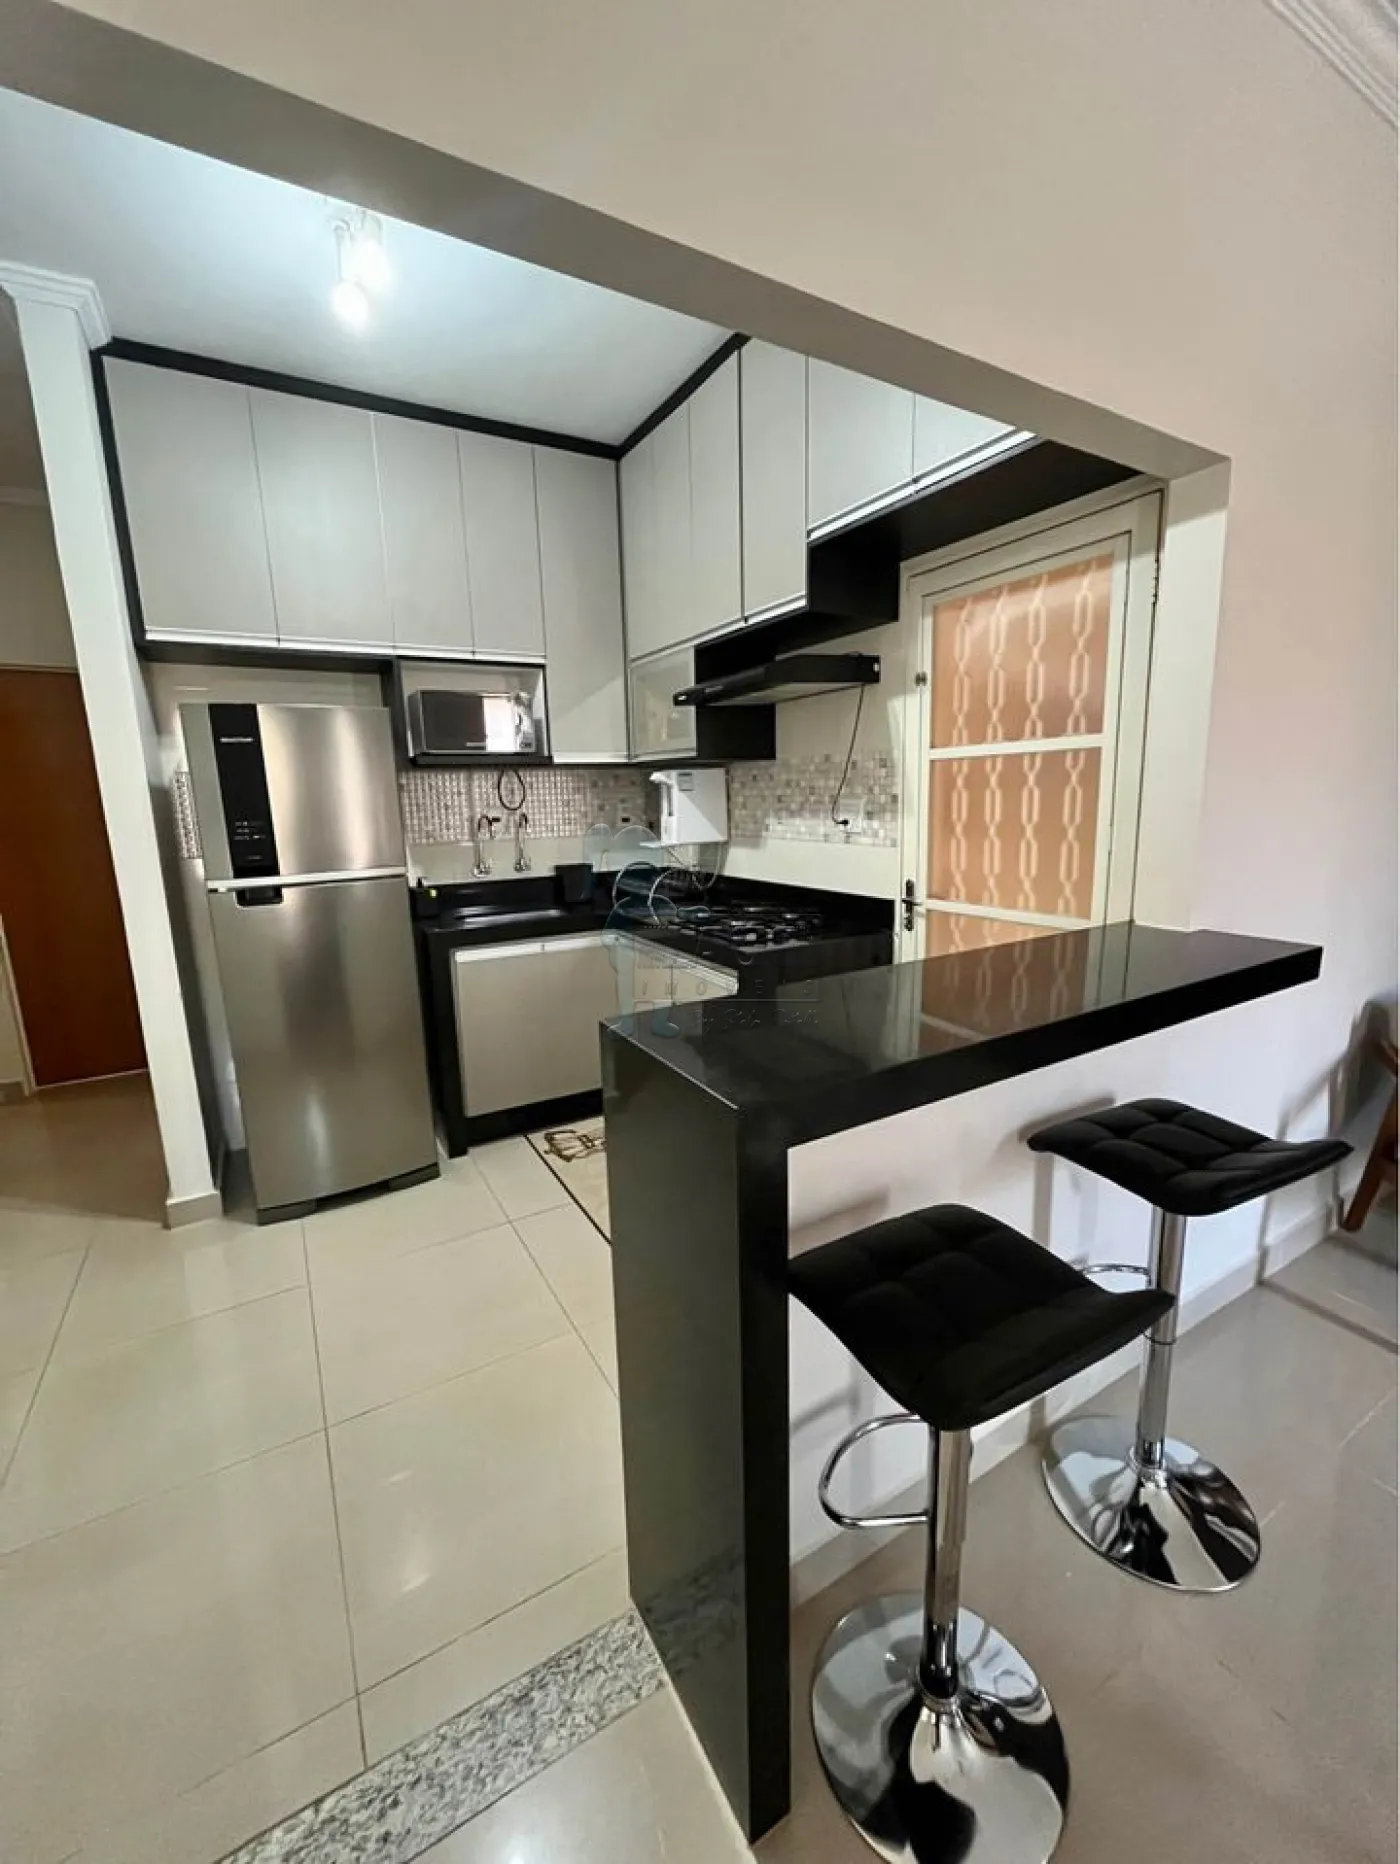 Comprar Casa condomínio / Padrão em Ribeirão Preto R$ 490.000,00 - Foto 5